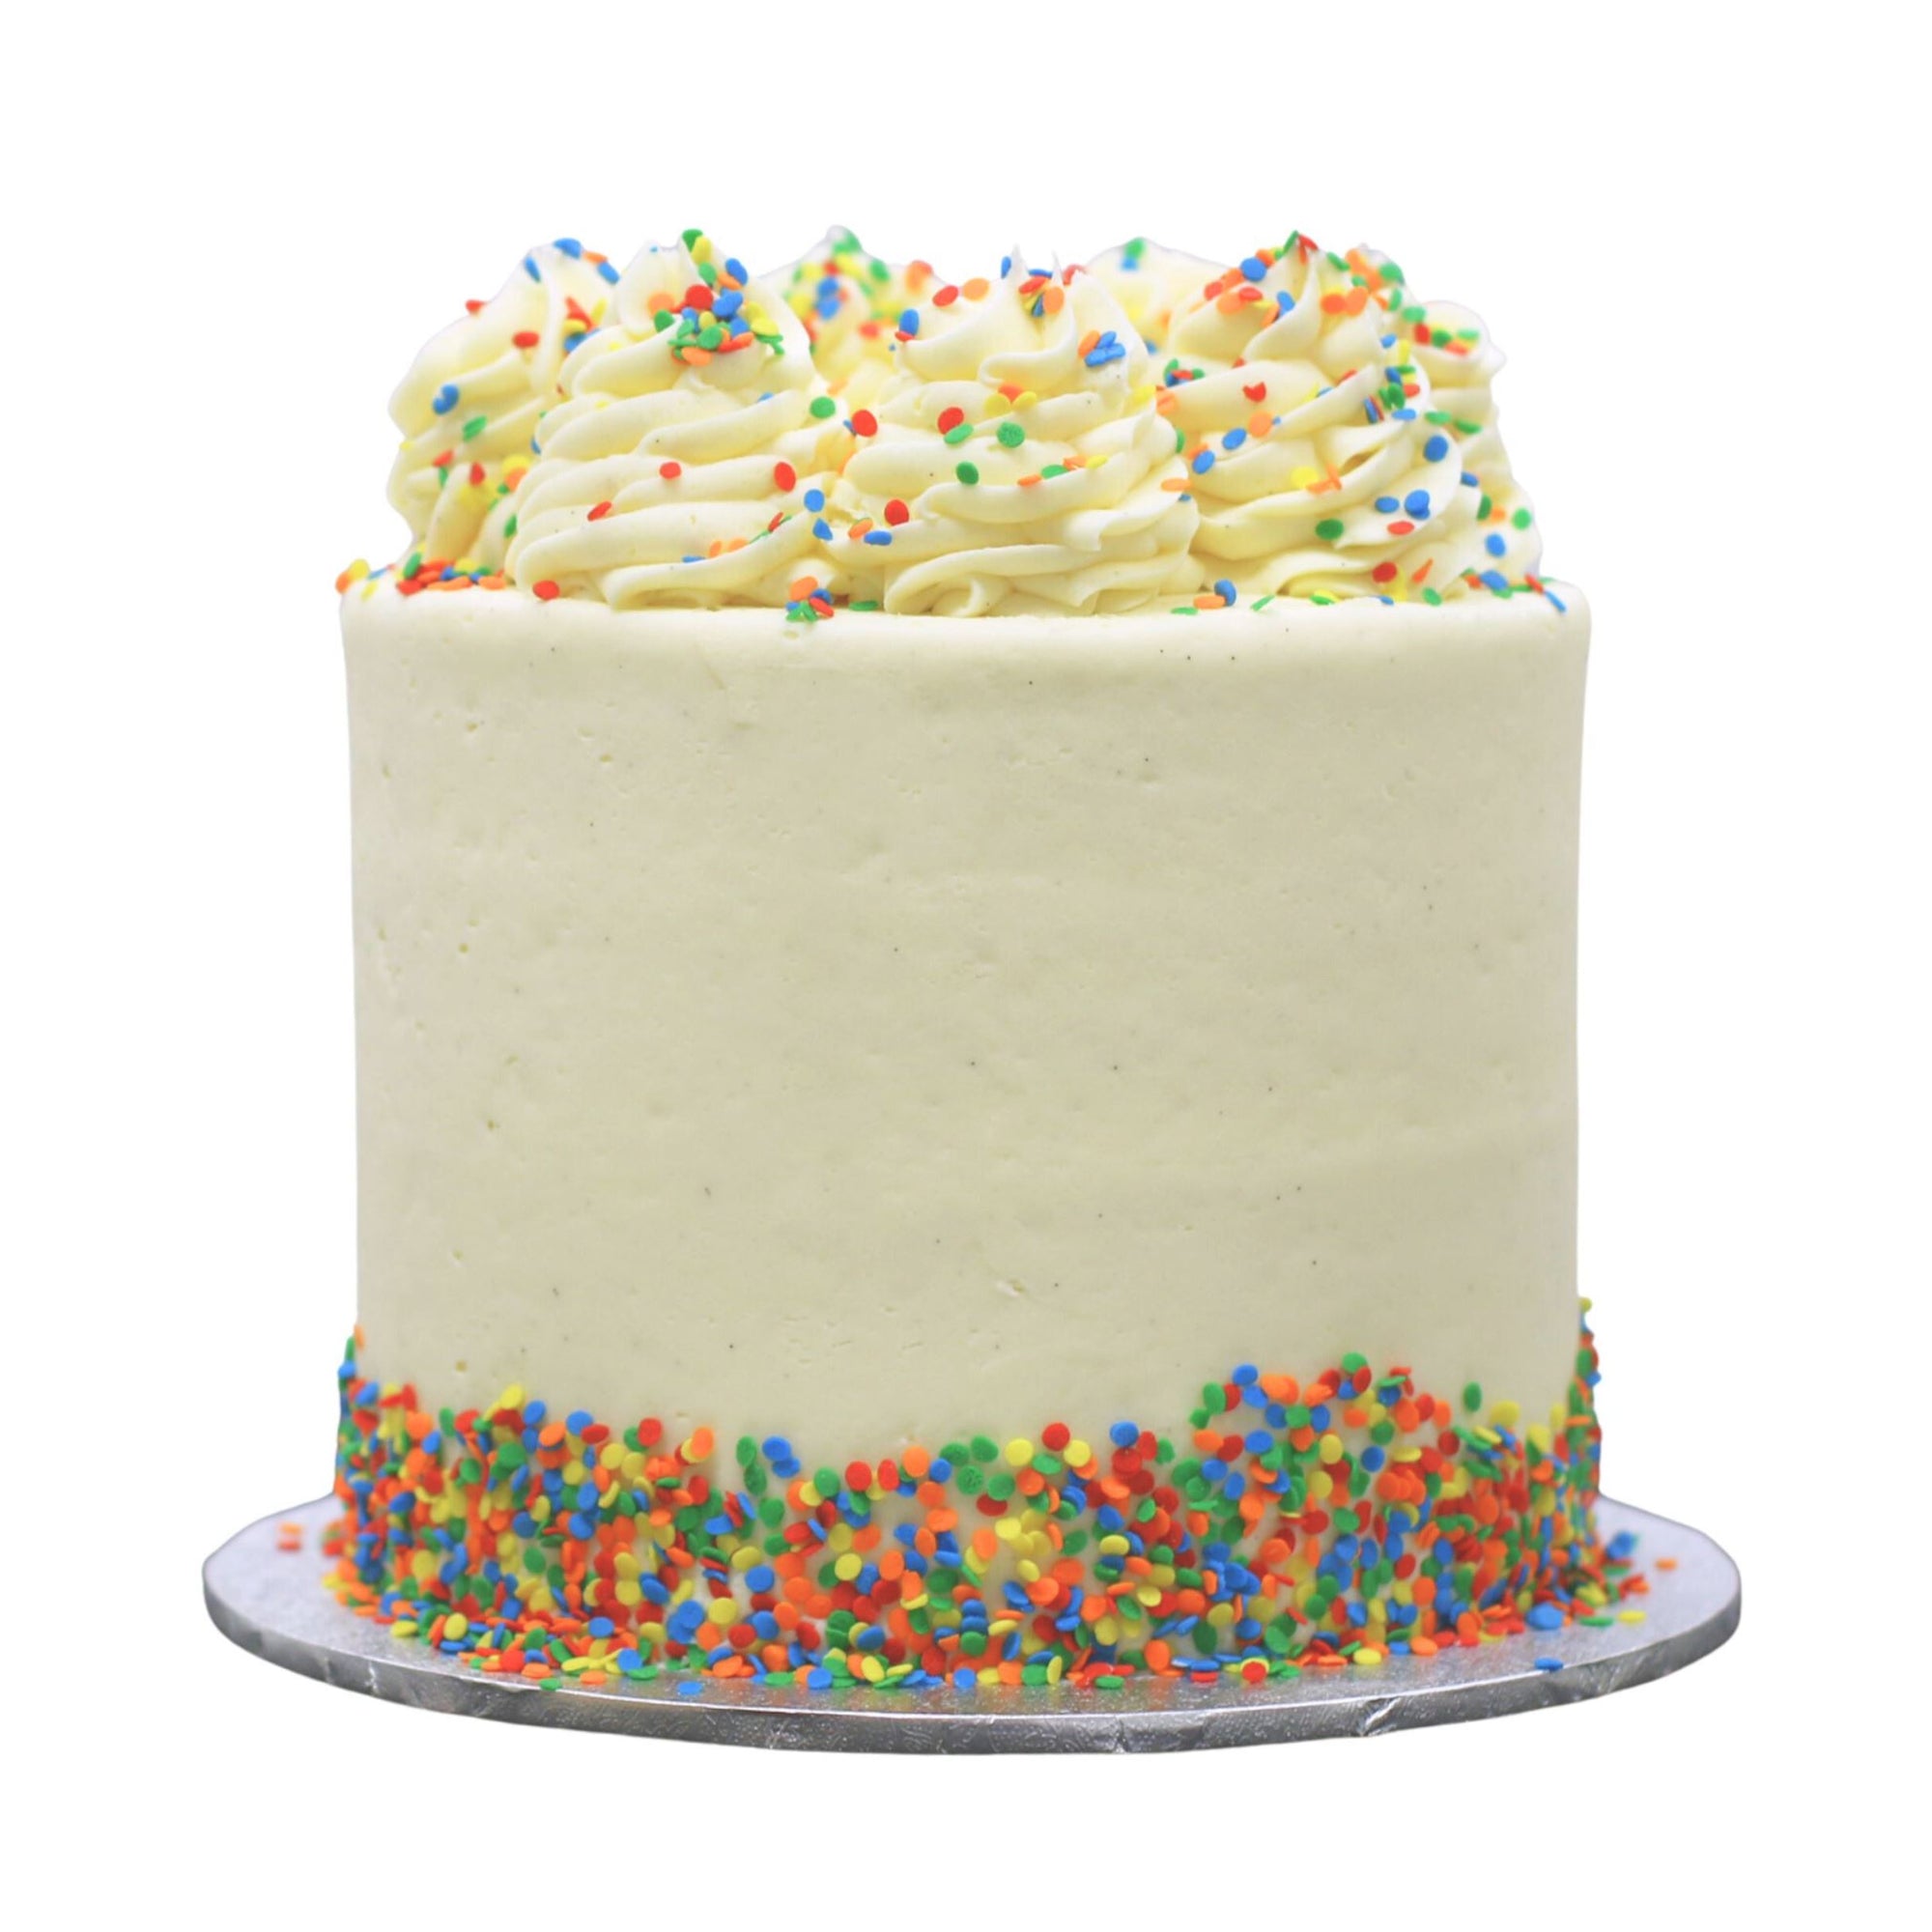 Classic Vanilla Cake Cakes The Cupcake Queens 